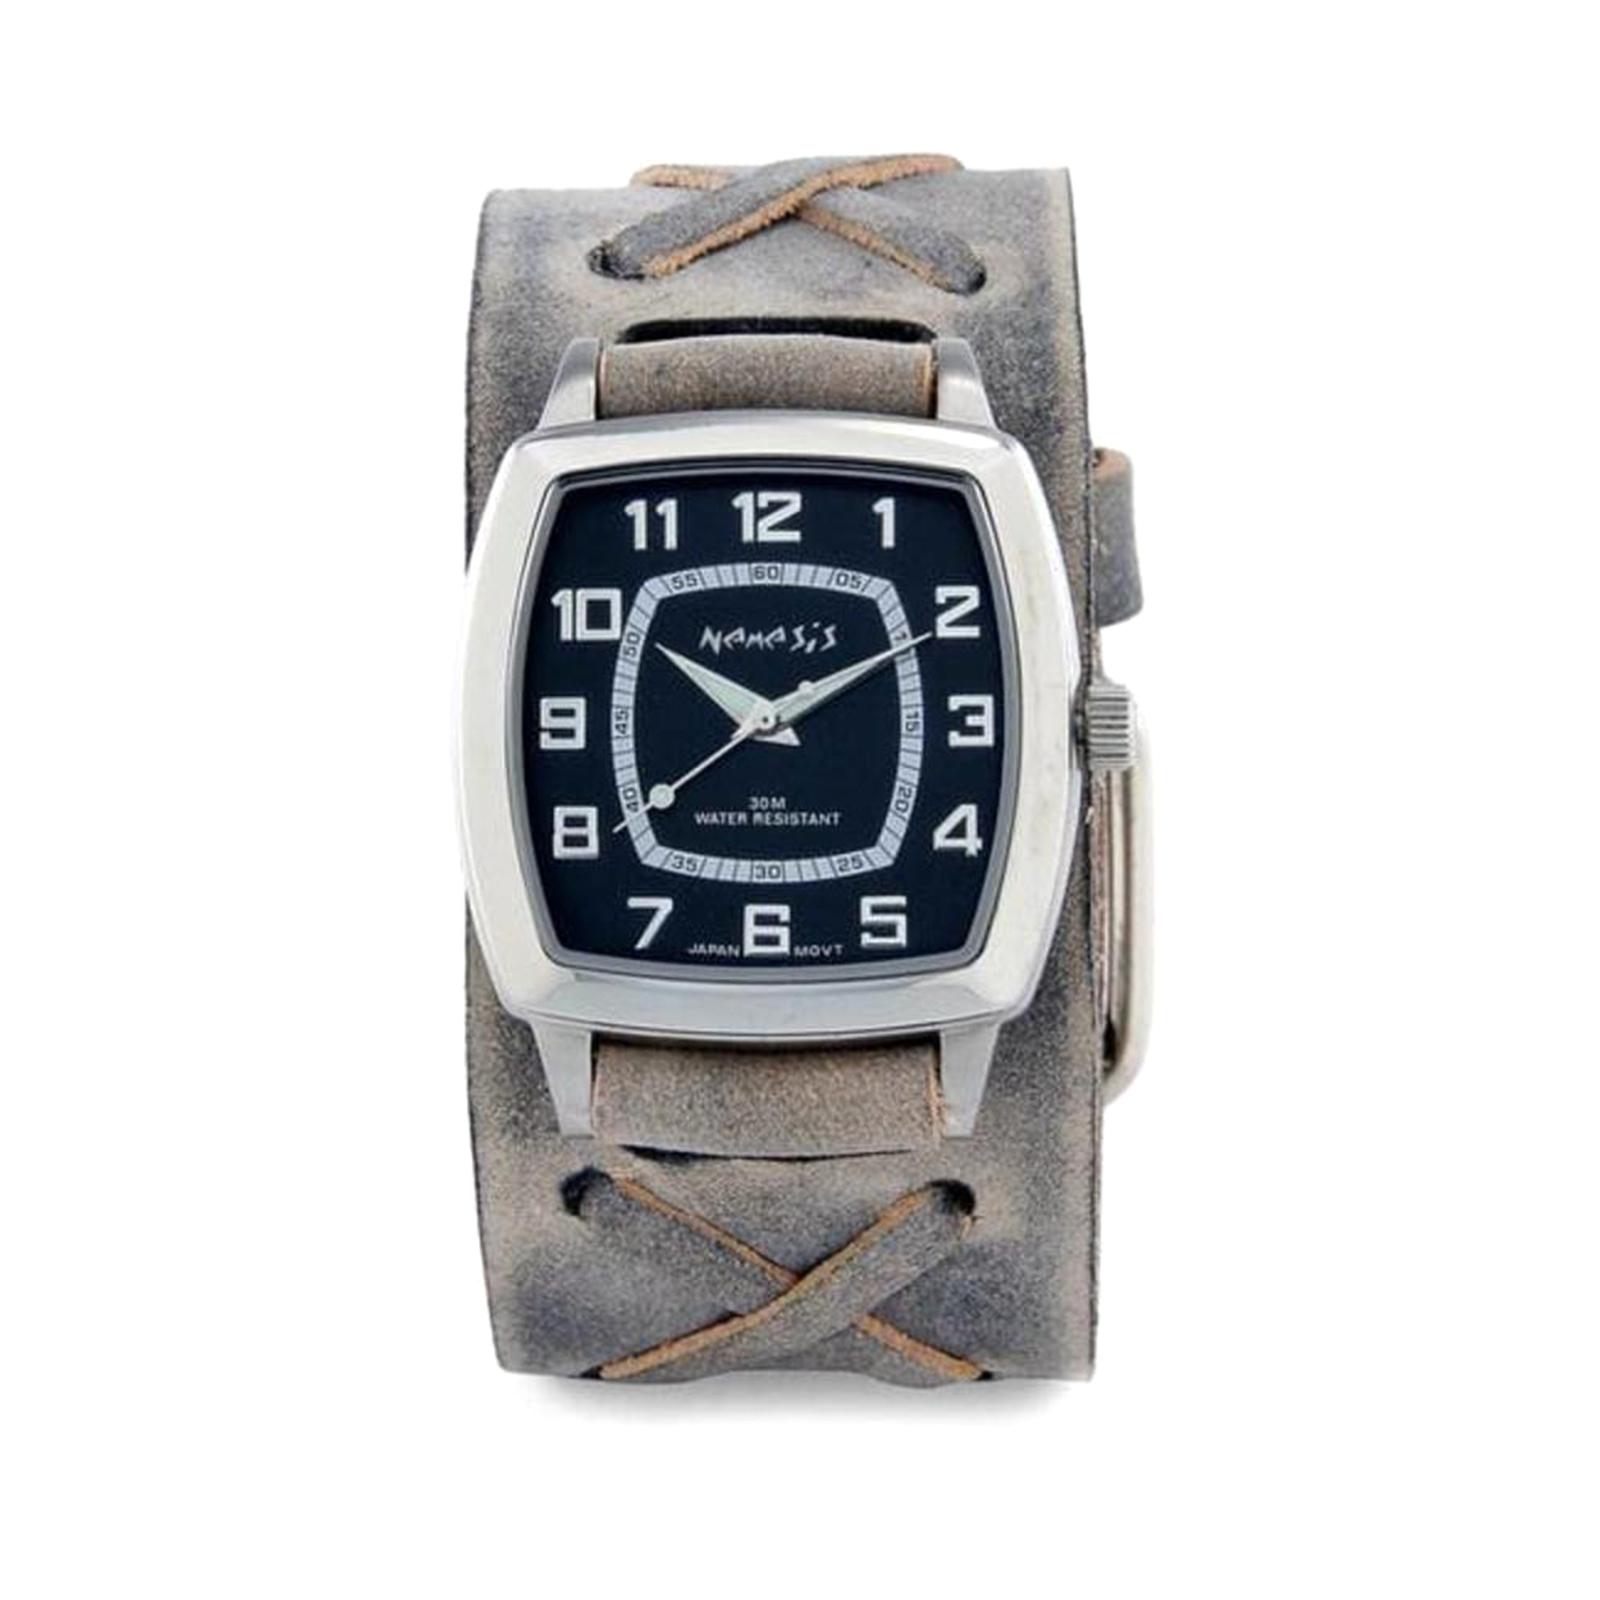 Nemesis FXB017K Men's Leather Watch - Charcoal Gray